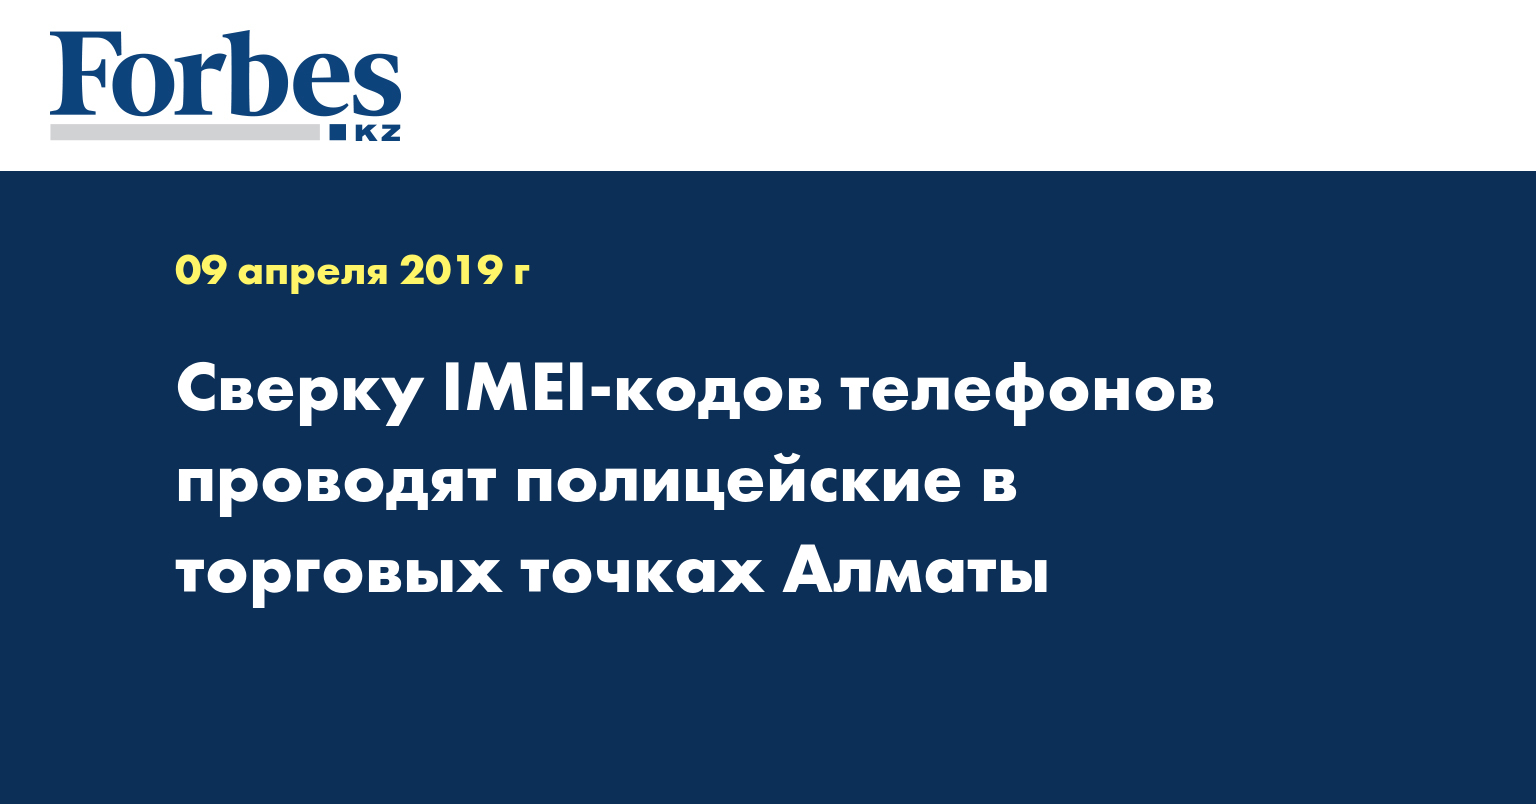 Сверку IMEI-кодов телефонов проводят полицейские в торговых точках Алматы